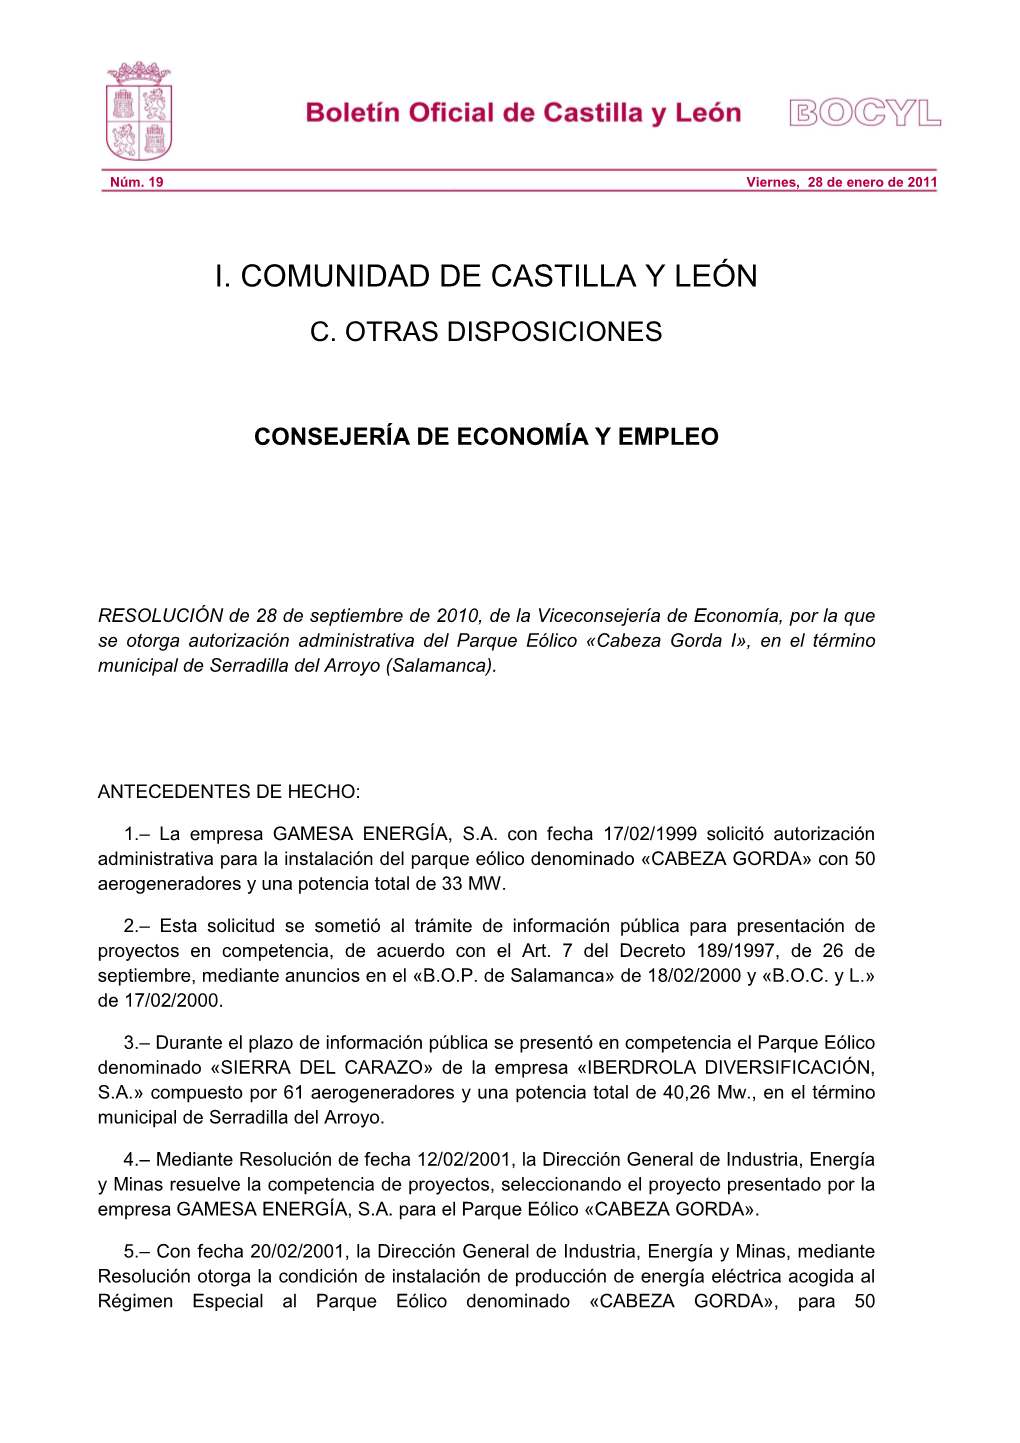 I. Comunidad De Castilla Y León C